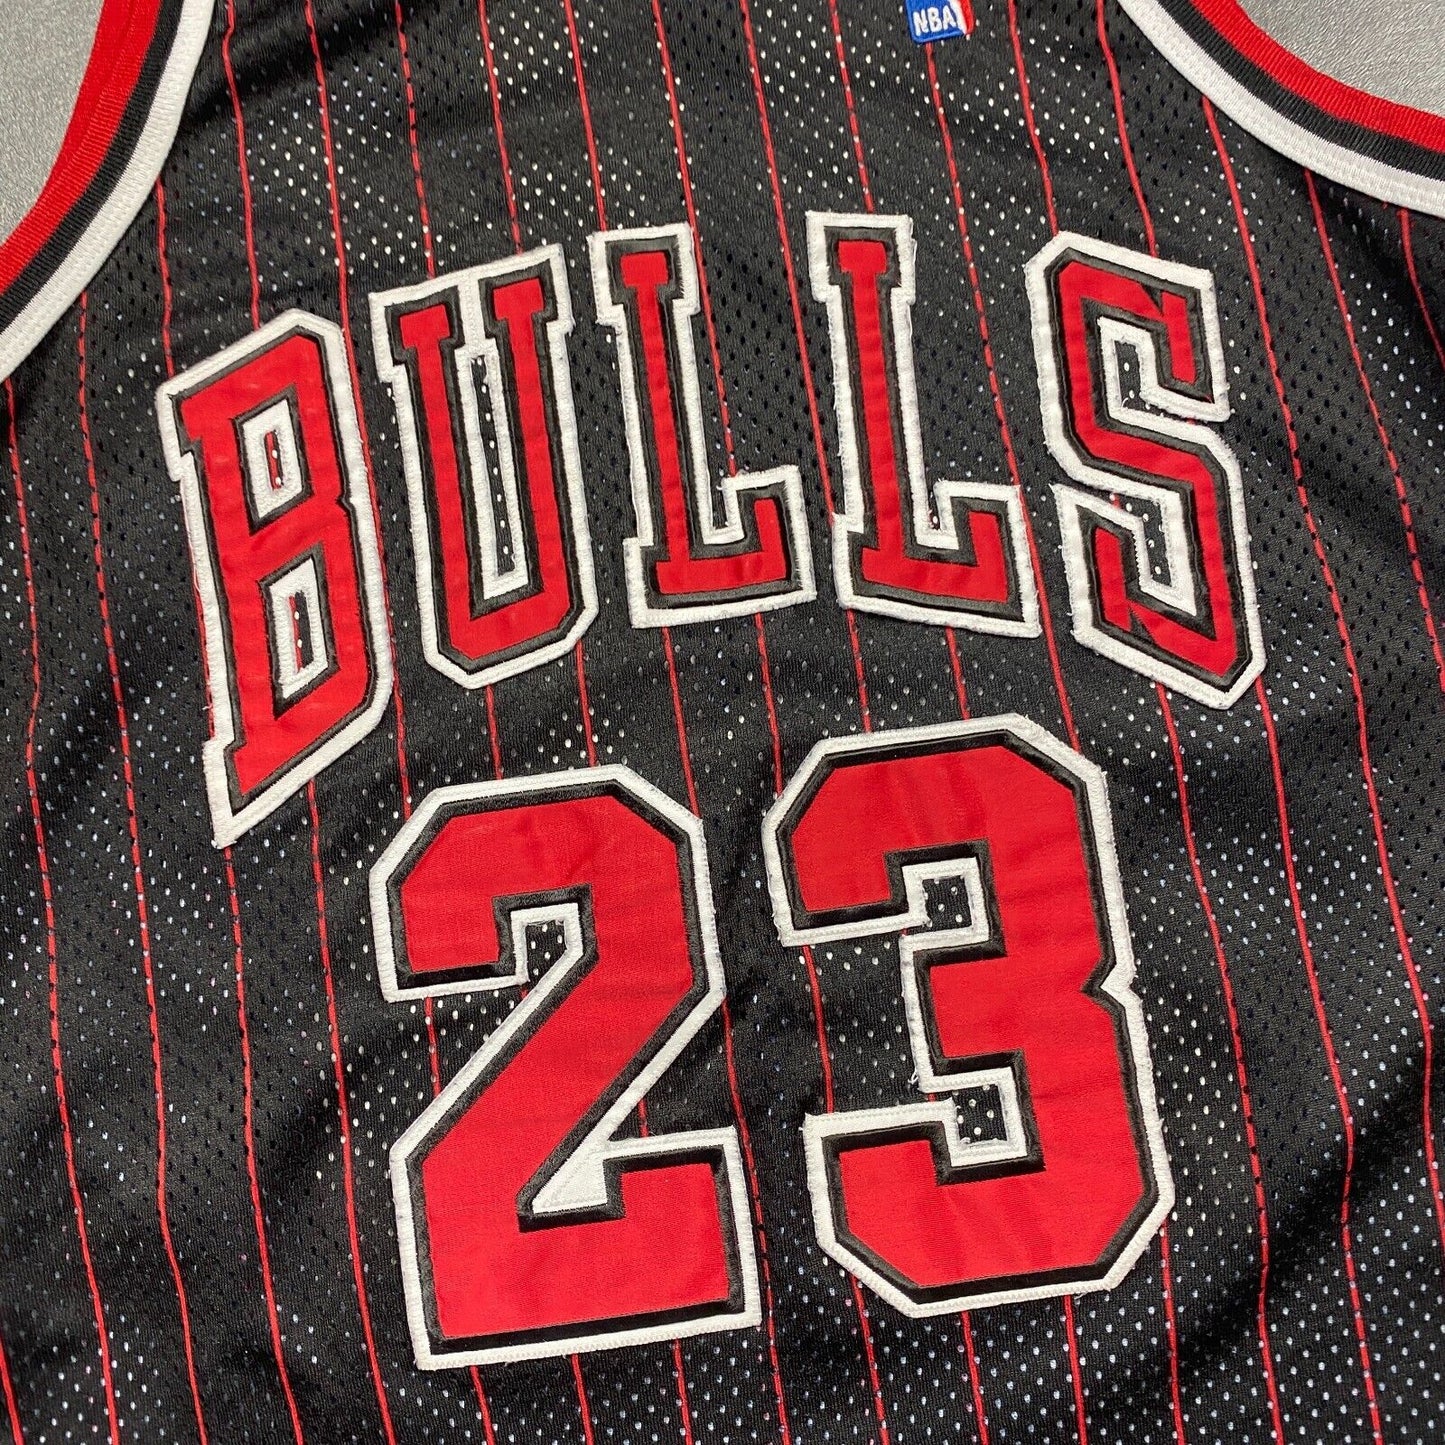 100% Authentic Michael Jordan Vintage Champion 95 96 Bulls Jersey Size 40 Mens